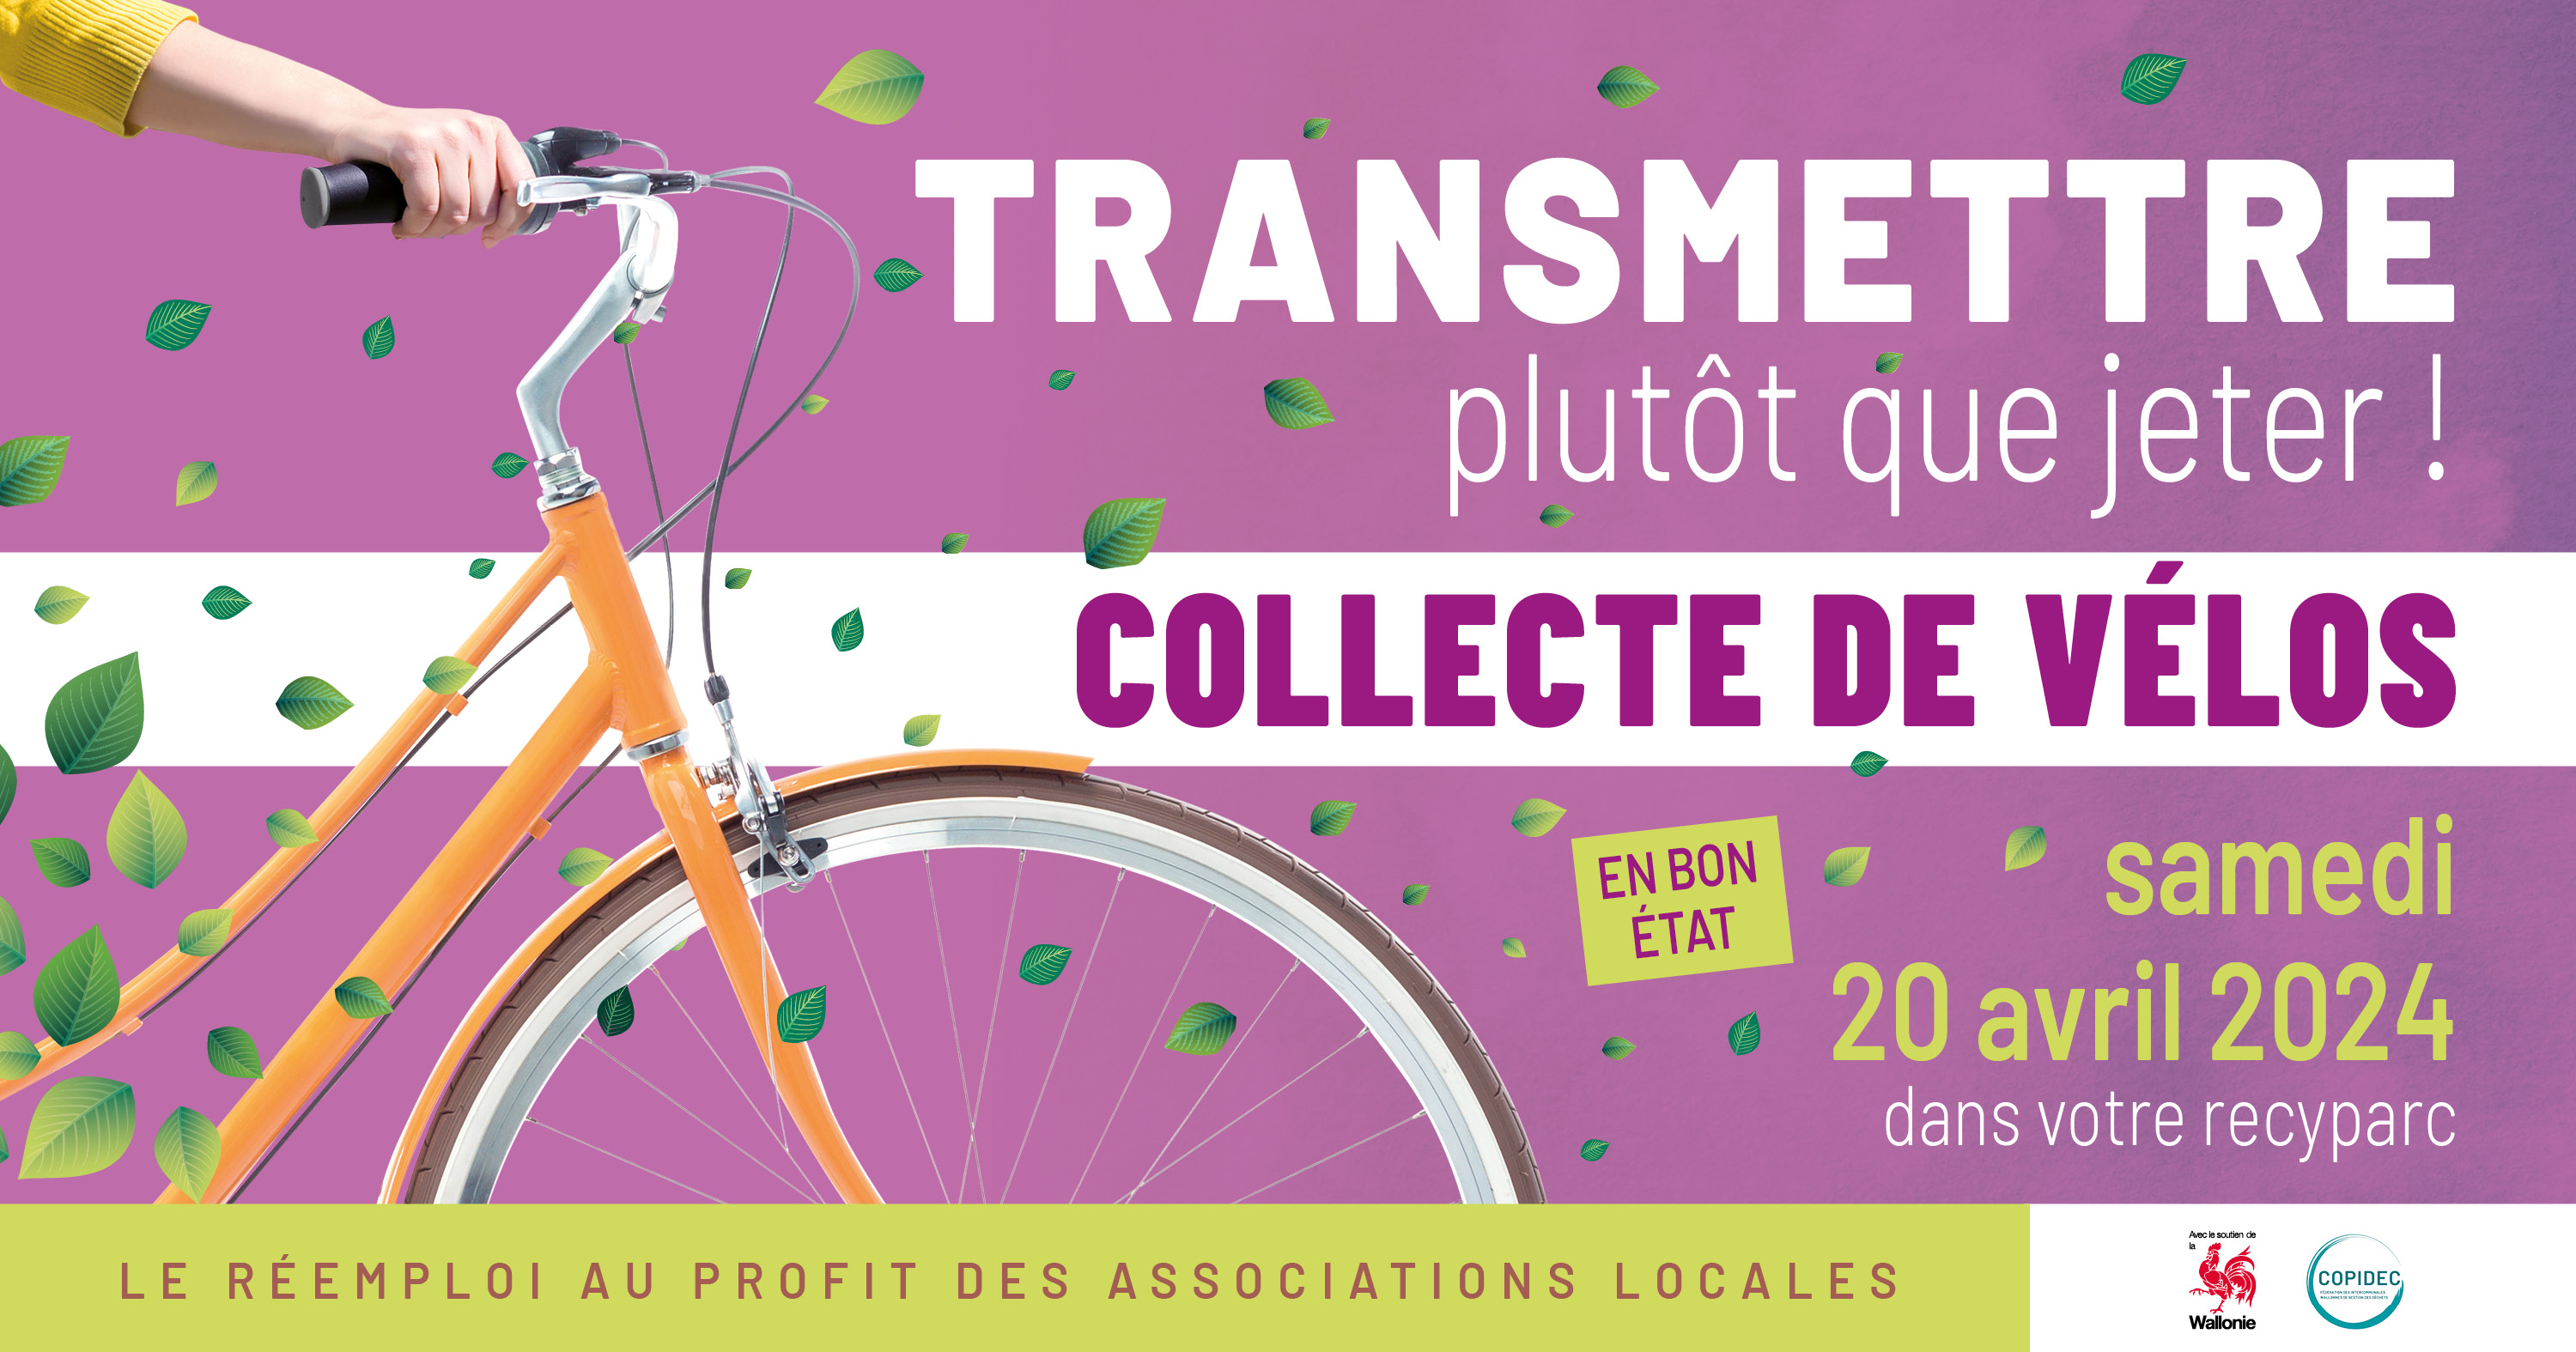 La traditionnelle collecte de vélos se déroulera le samedi 20 avril 2024 !